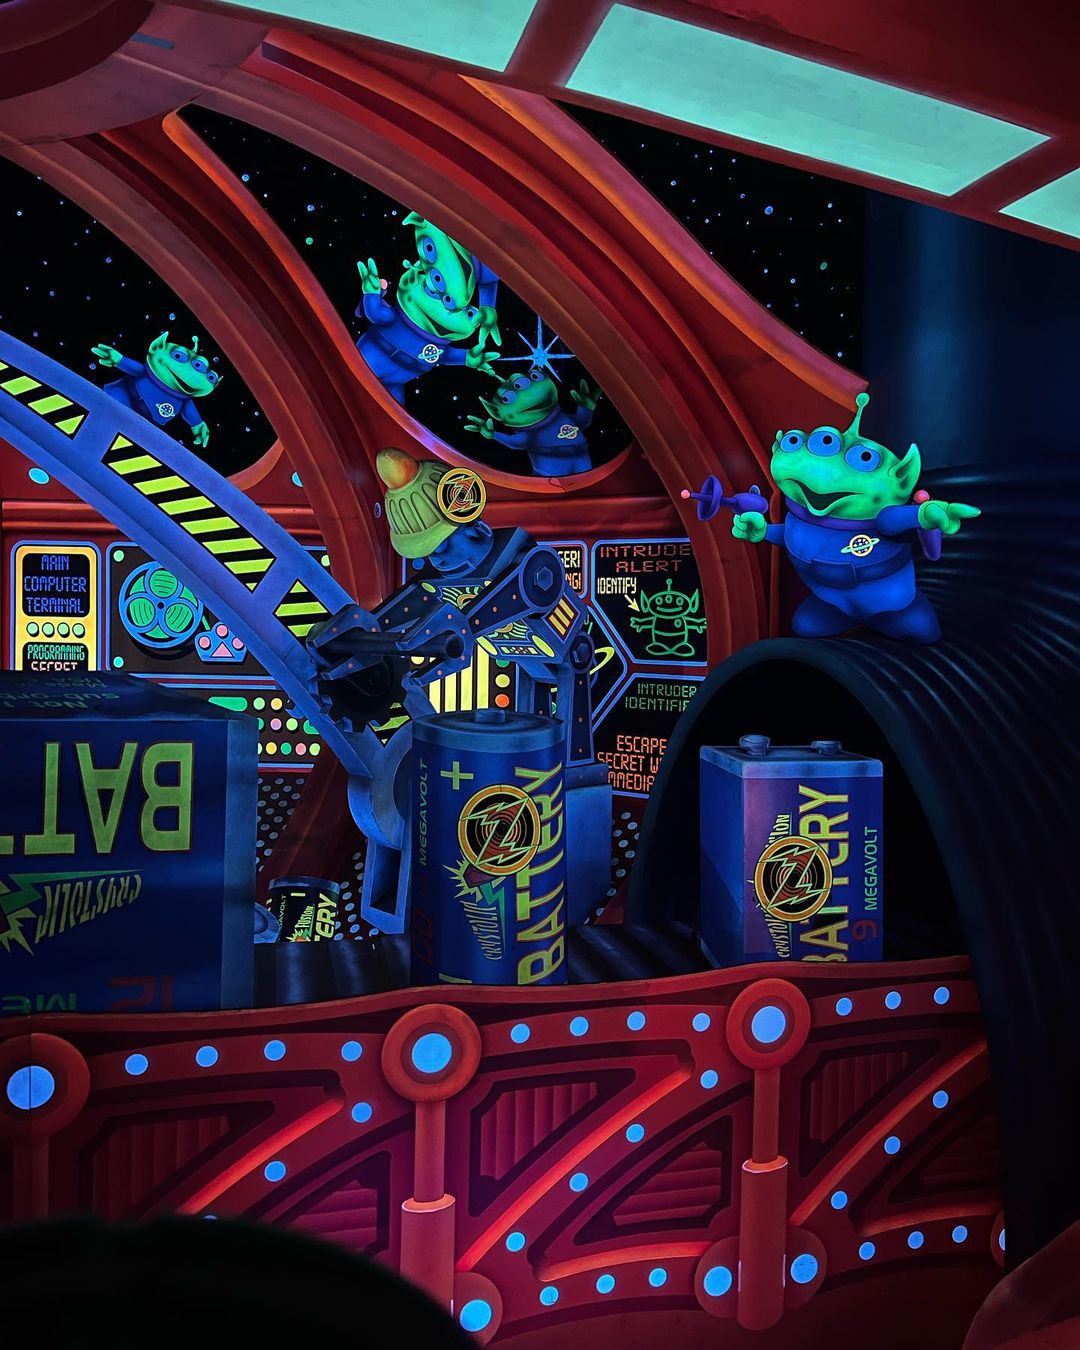 Space Ranger Spin do Buzz Lightyear - Atração do Magic Kingdom 